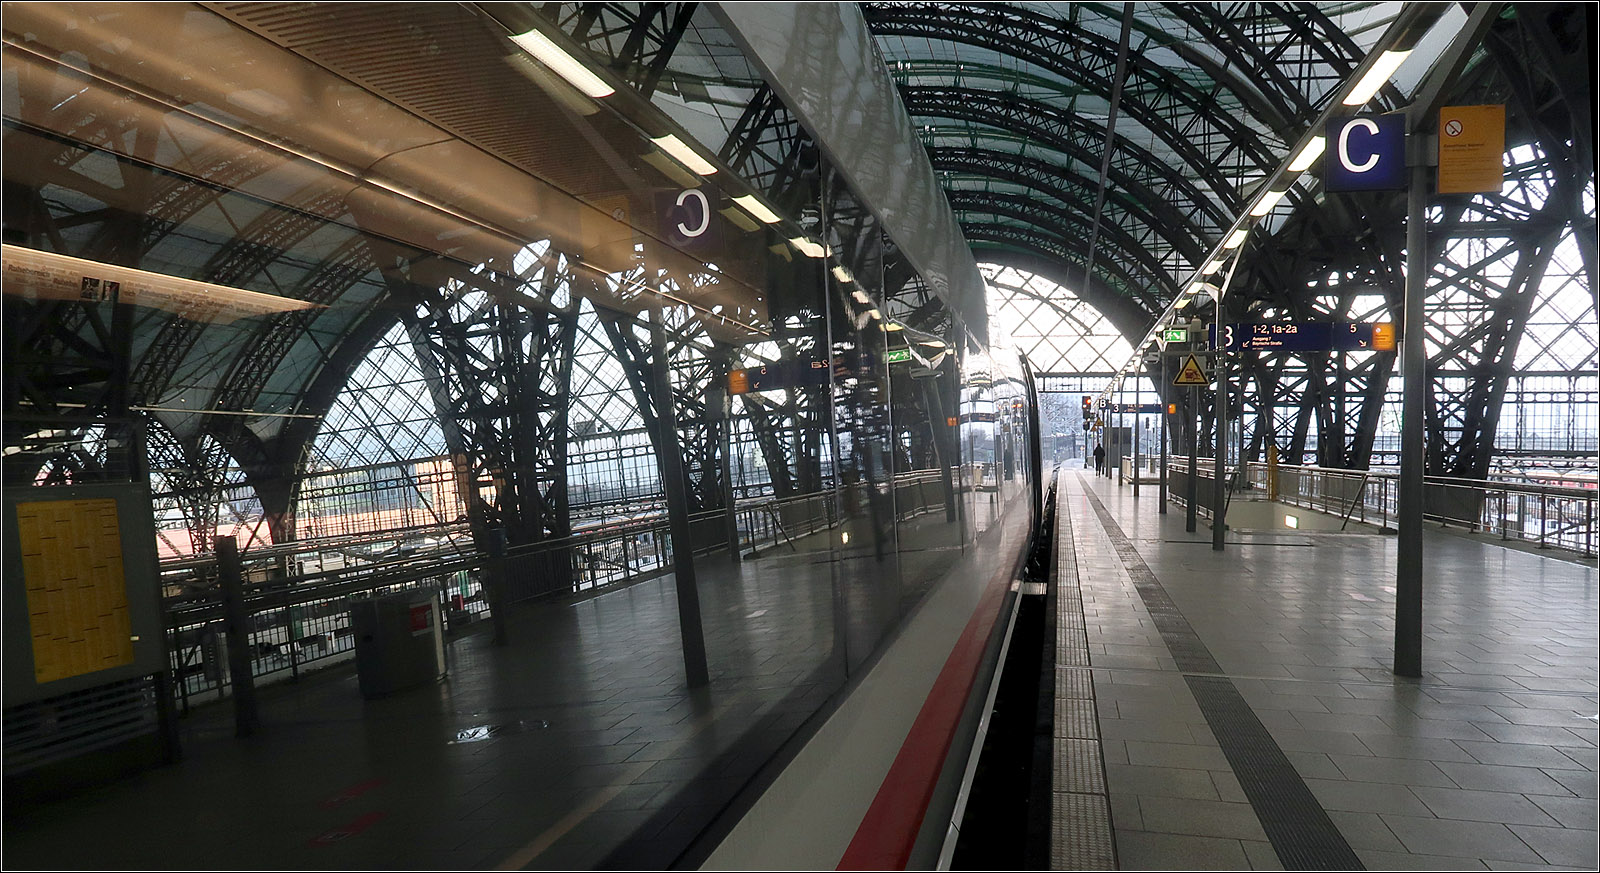 Ein kleine Impression - 

... meiner Eisenbahn nach Leipzig im Dresdener Hauptbahnhof. 

Auf der Fahrt von Berlin nach Nürnberg hat der Zugbegleiter immer durchgesagt: 'unsere Eisenbahn fährt weiter über... nach München.' Den Begriff 'Eisenbahn' finde ich schön in dem Zusammenhang, gerade auch bei einem ICE.

22.03.2023 (M)